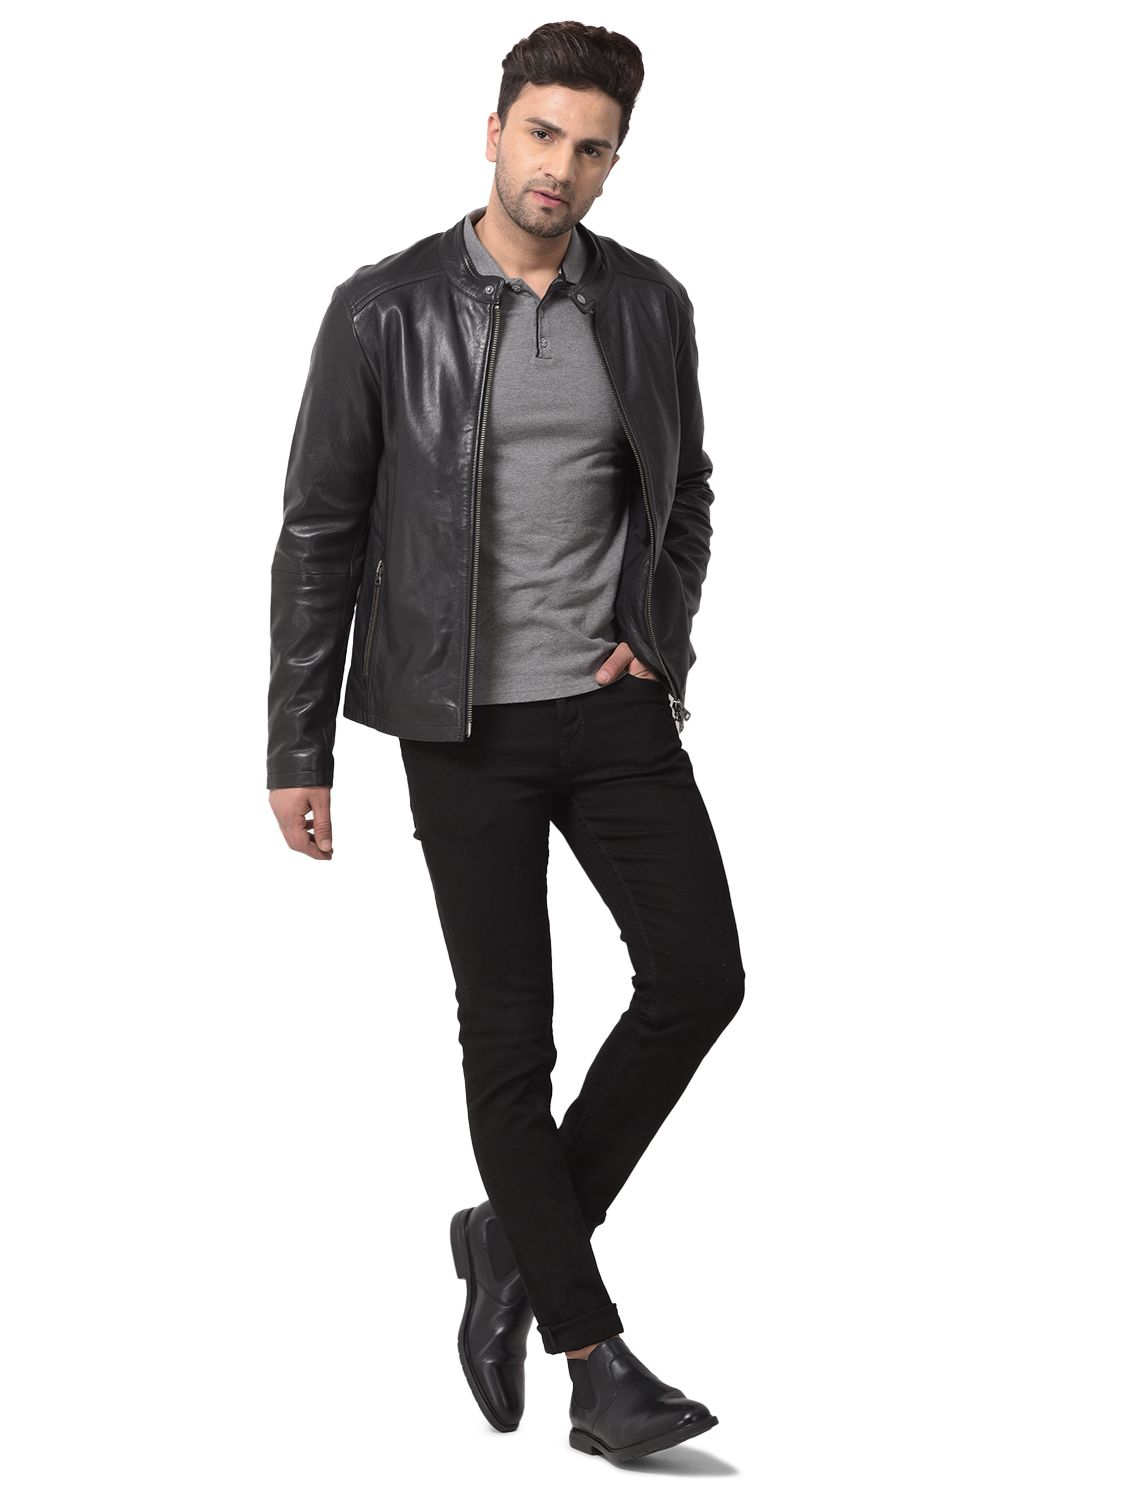 Comfy Woodland Leather Jacket for Men For Style And Elegance - Alibaba.com-gemektower.com.vn